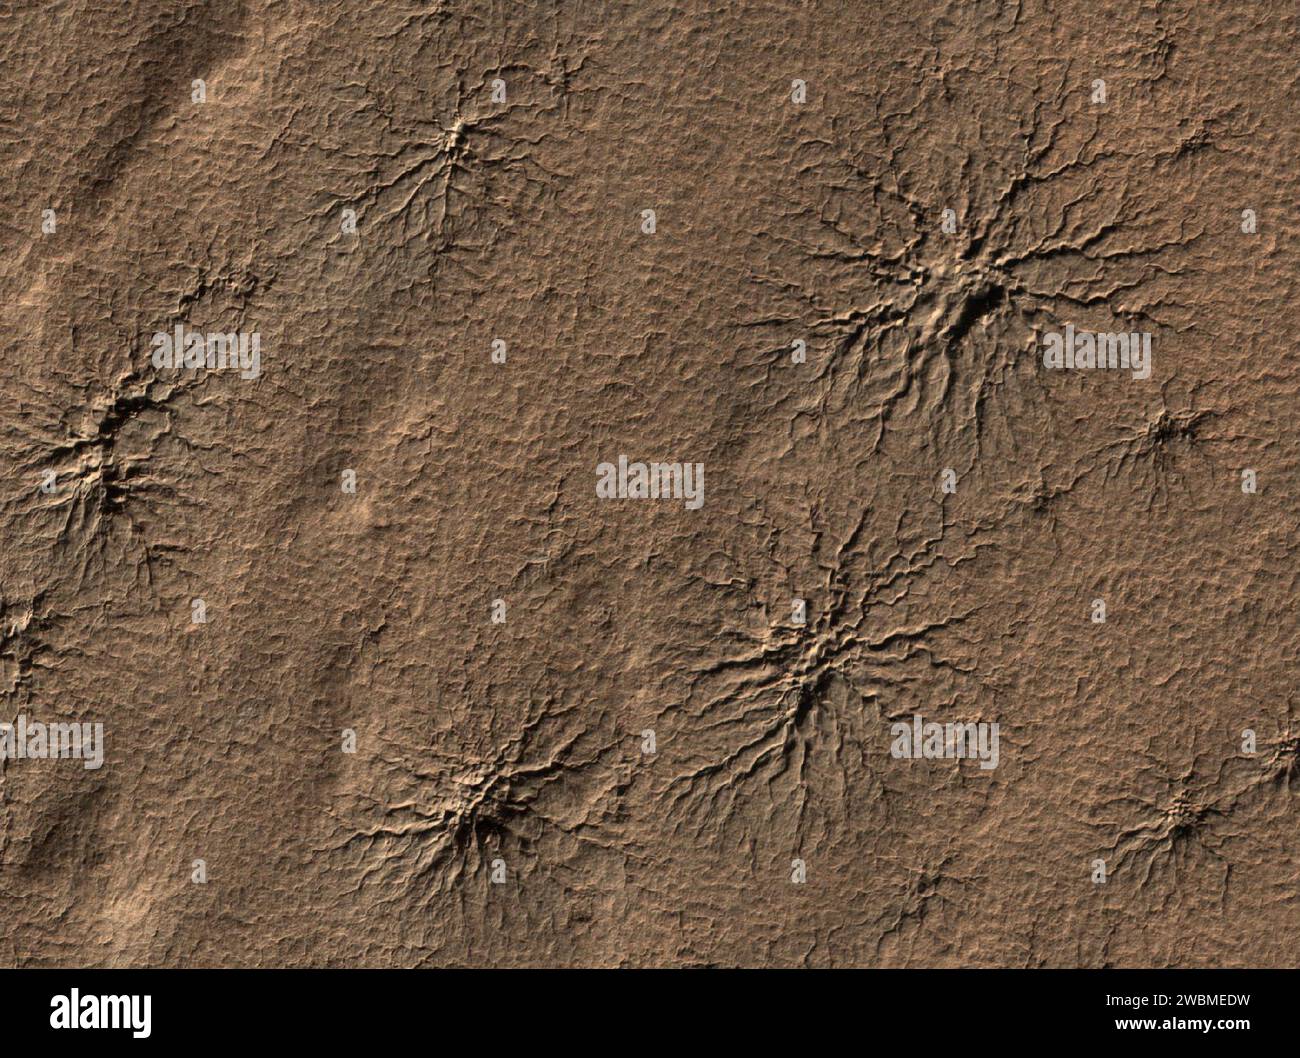 La telecamera High Resolution Imaging Science Experiment sul Mars Reconnaissance Orbiter della NASA ha catturato questa immagine di caratteristiche a forma di ragno su Marte, scolpite vaporizzando il ghiaccio secco. Foto Stock